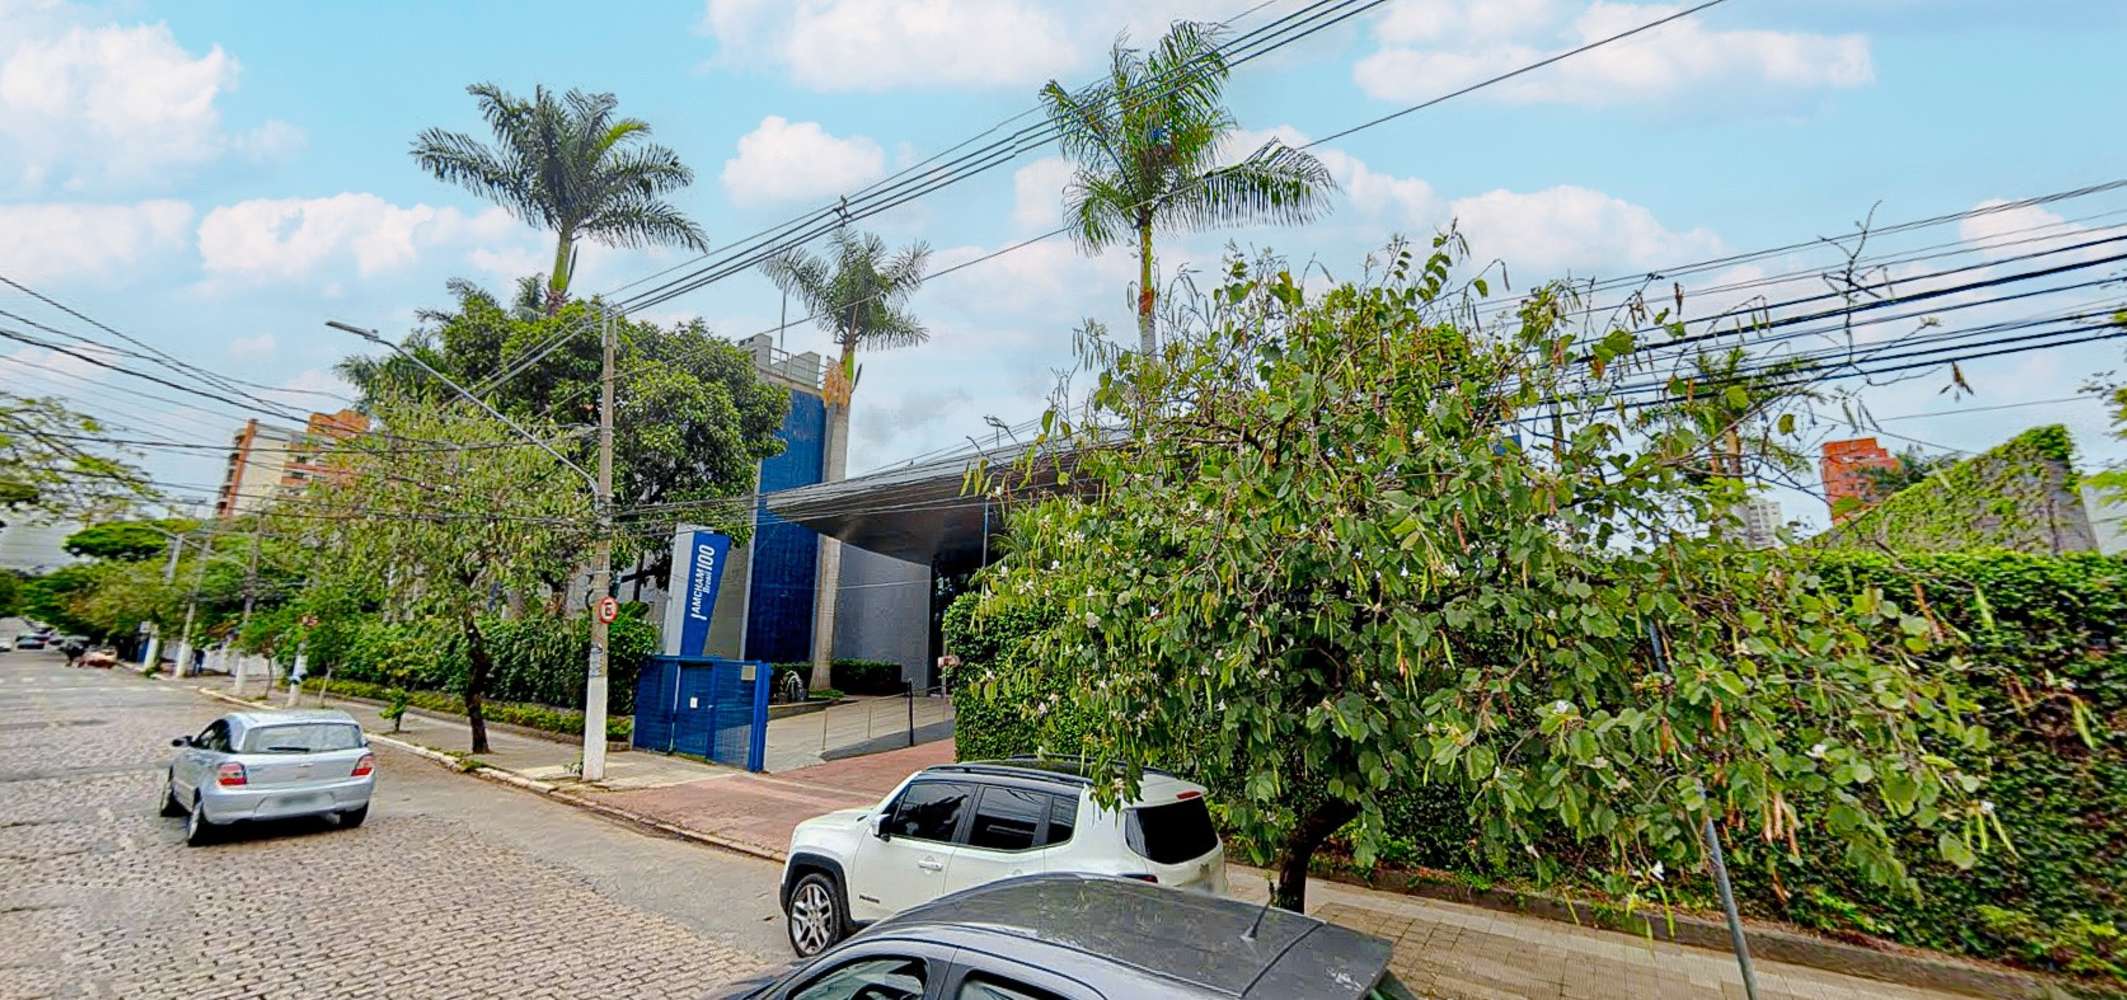 Escritório São paulo, 02327060 - Amcham Business Center